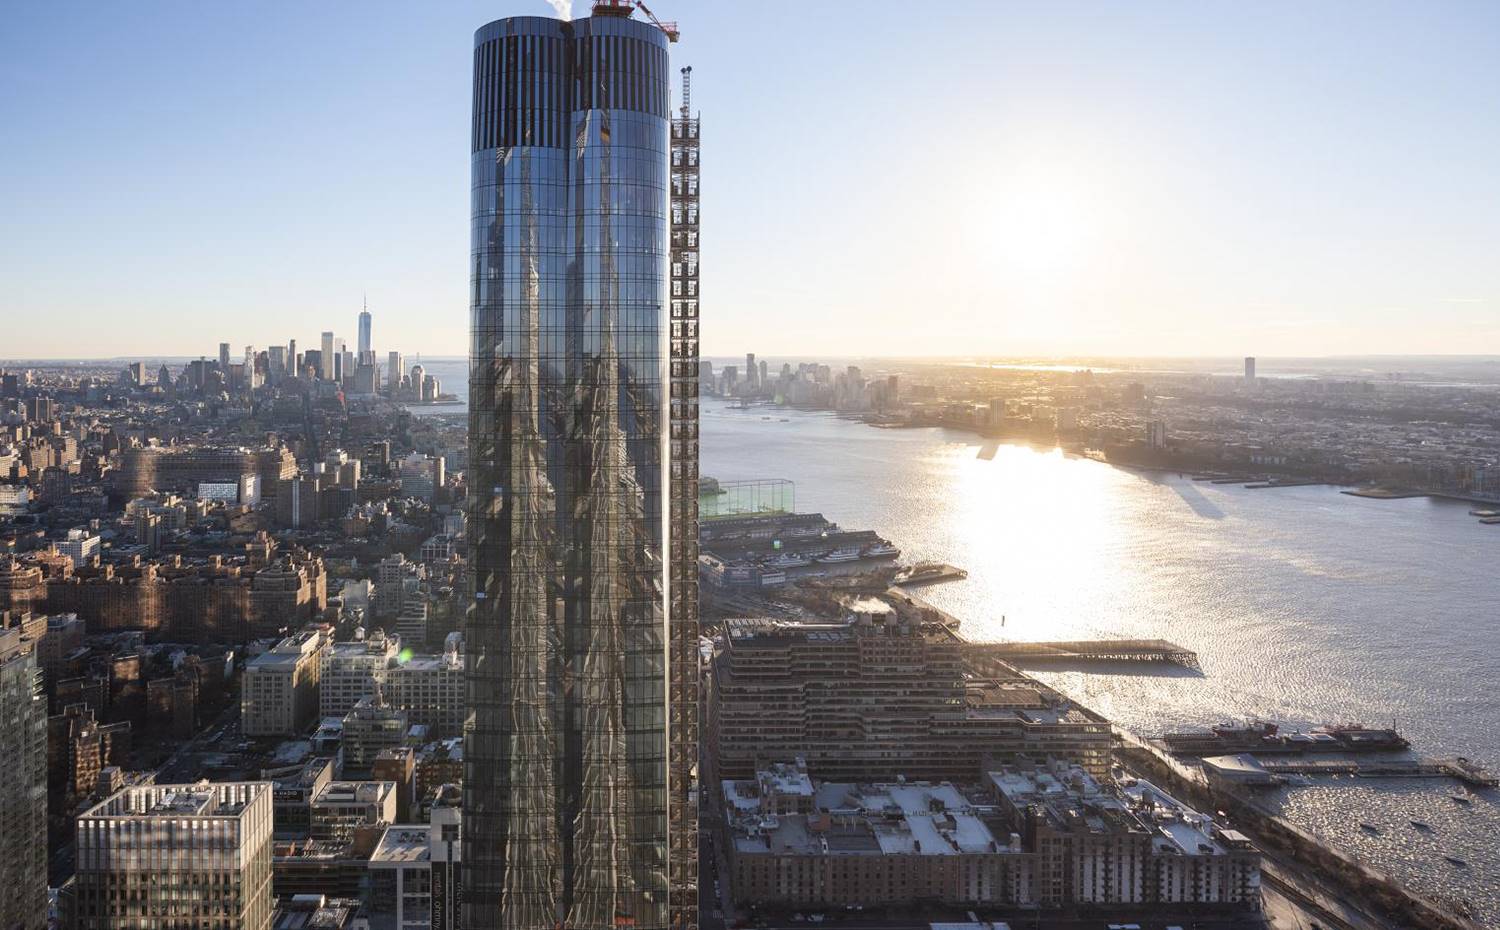 El complejo incluye edificios de oficina y residenciales, como la torre 15 Hudson Yards, del estudio Diller Scofidio+Renfro